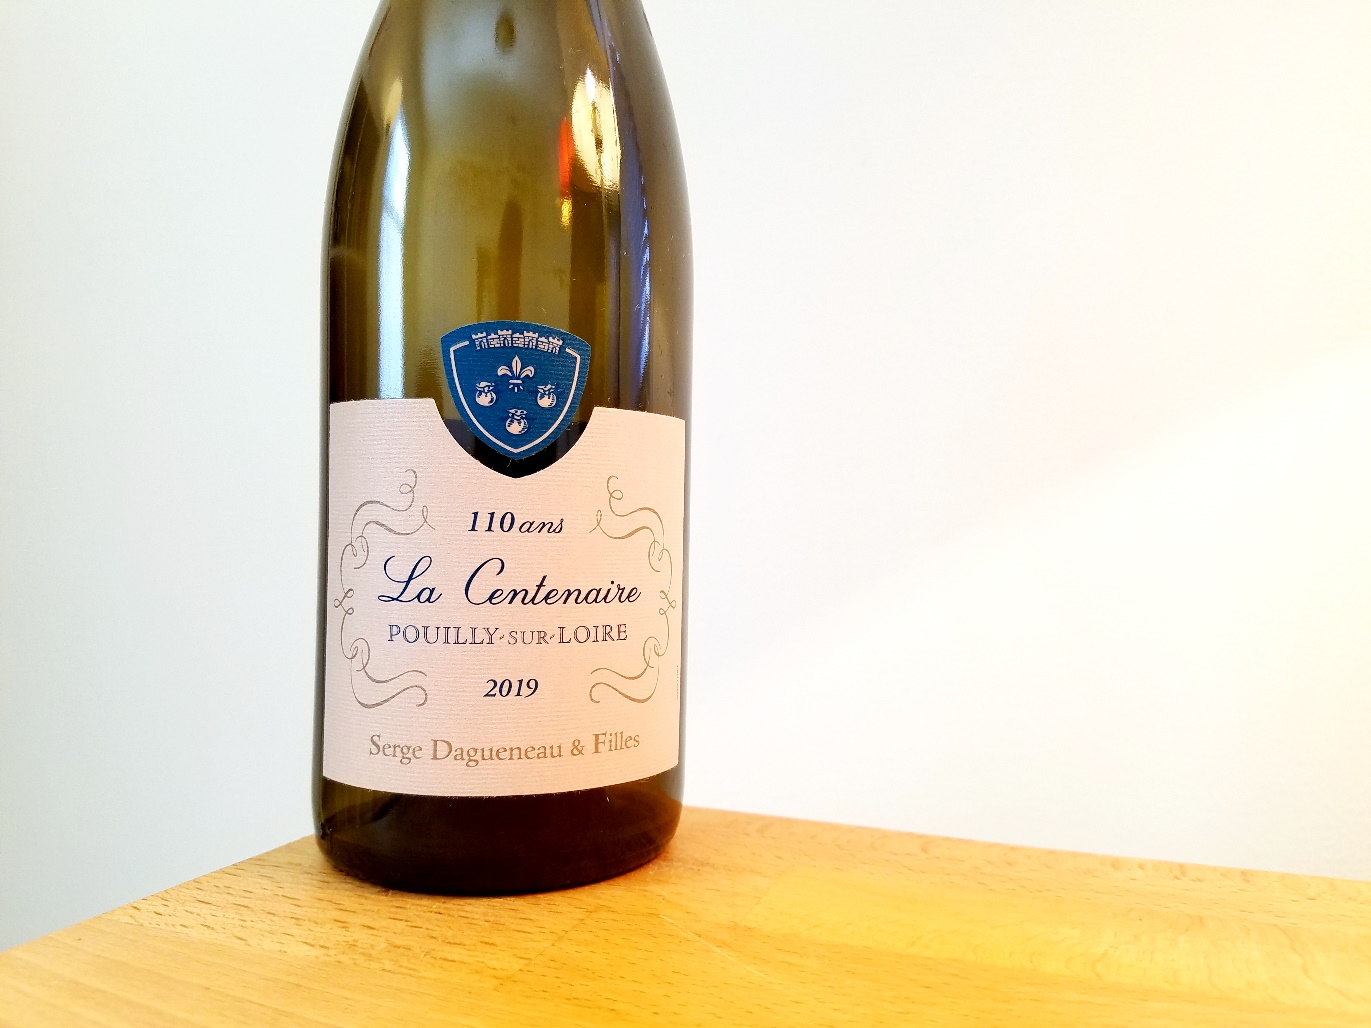 Serge Dagueneau & Filles, La Centenaire 2019, Pouilly-Sur-Loire, Loire, France, Wine Casual